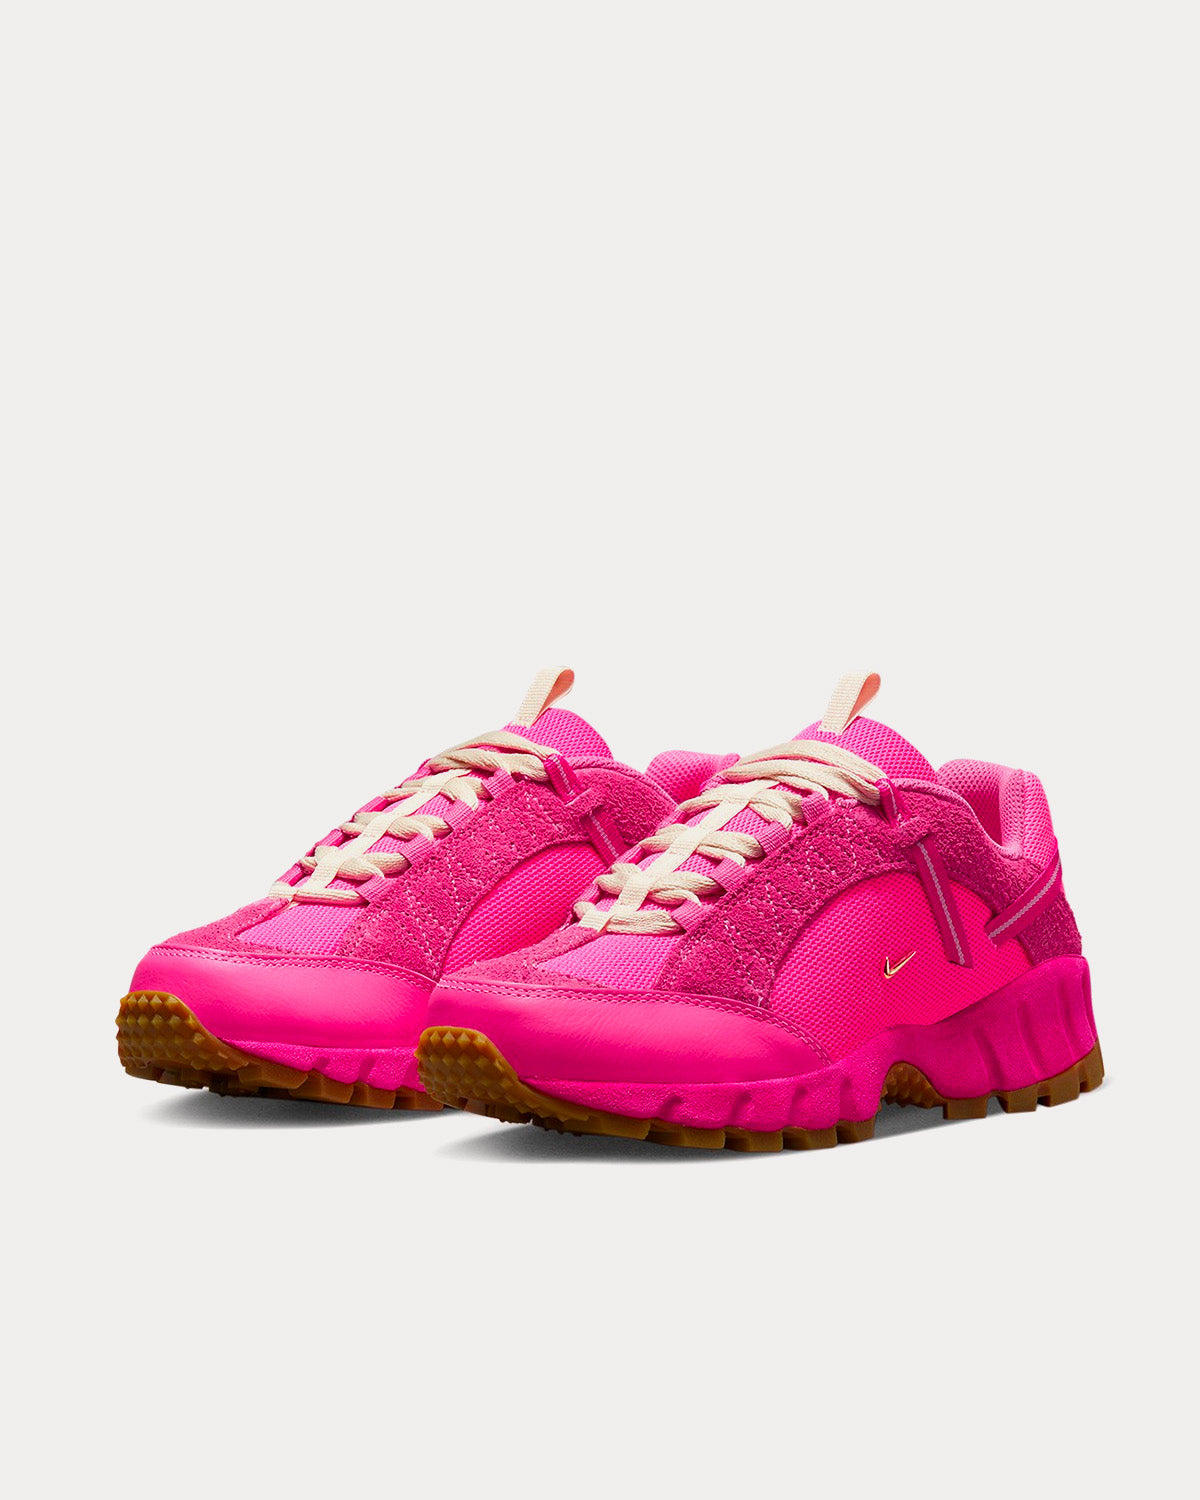 Nike x Jacquemus - Air Humara LX Pink Low Top Sneakers